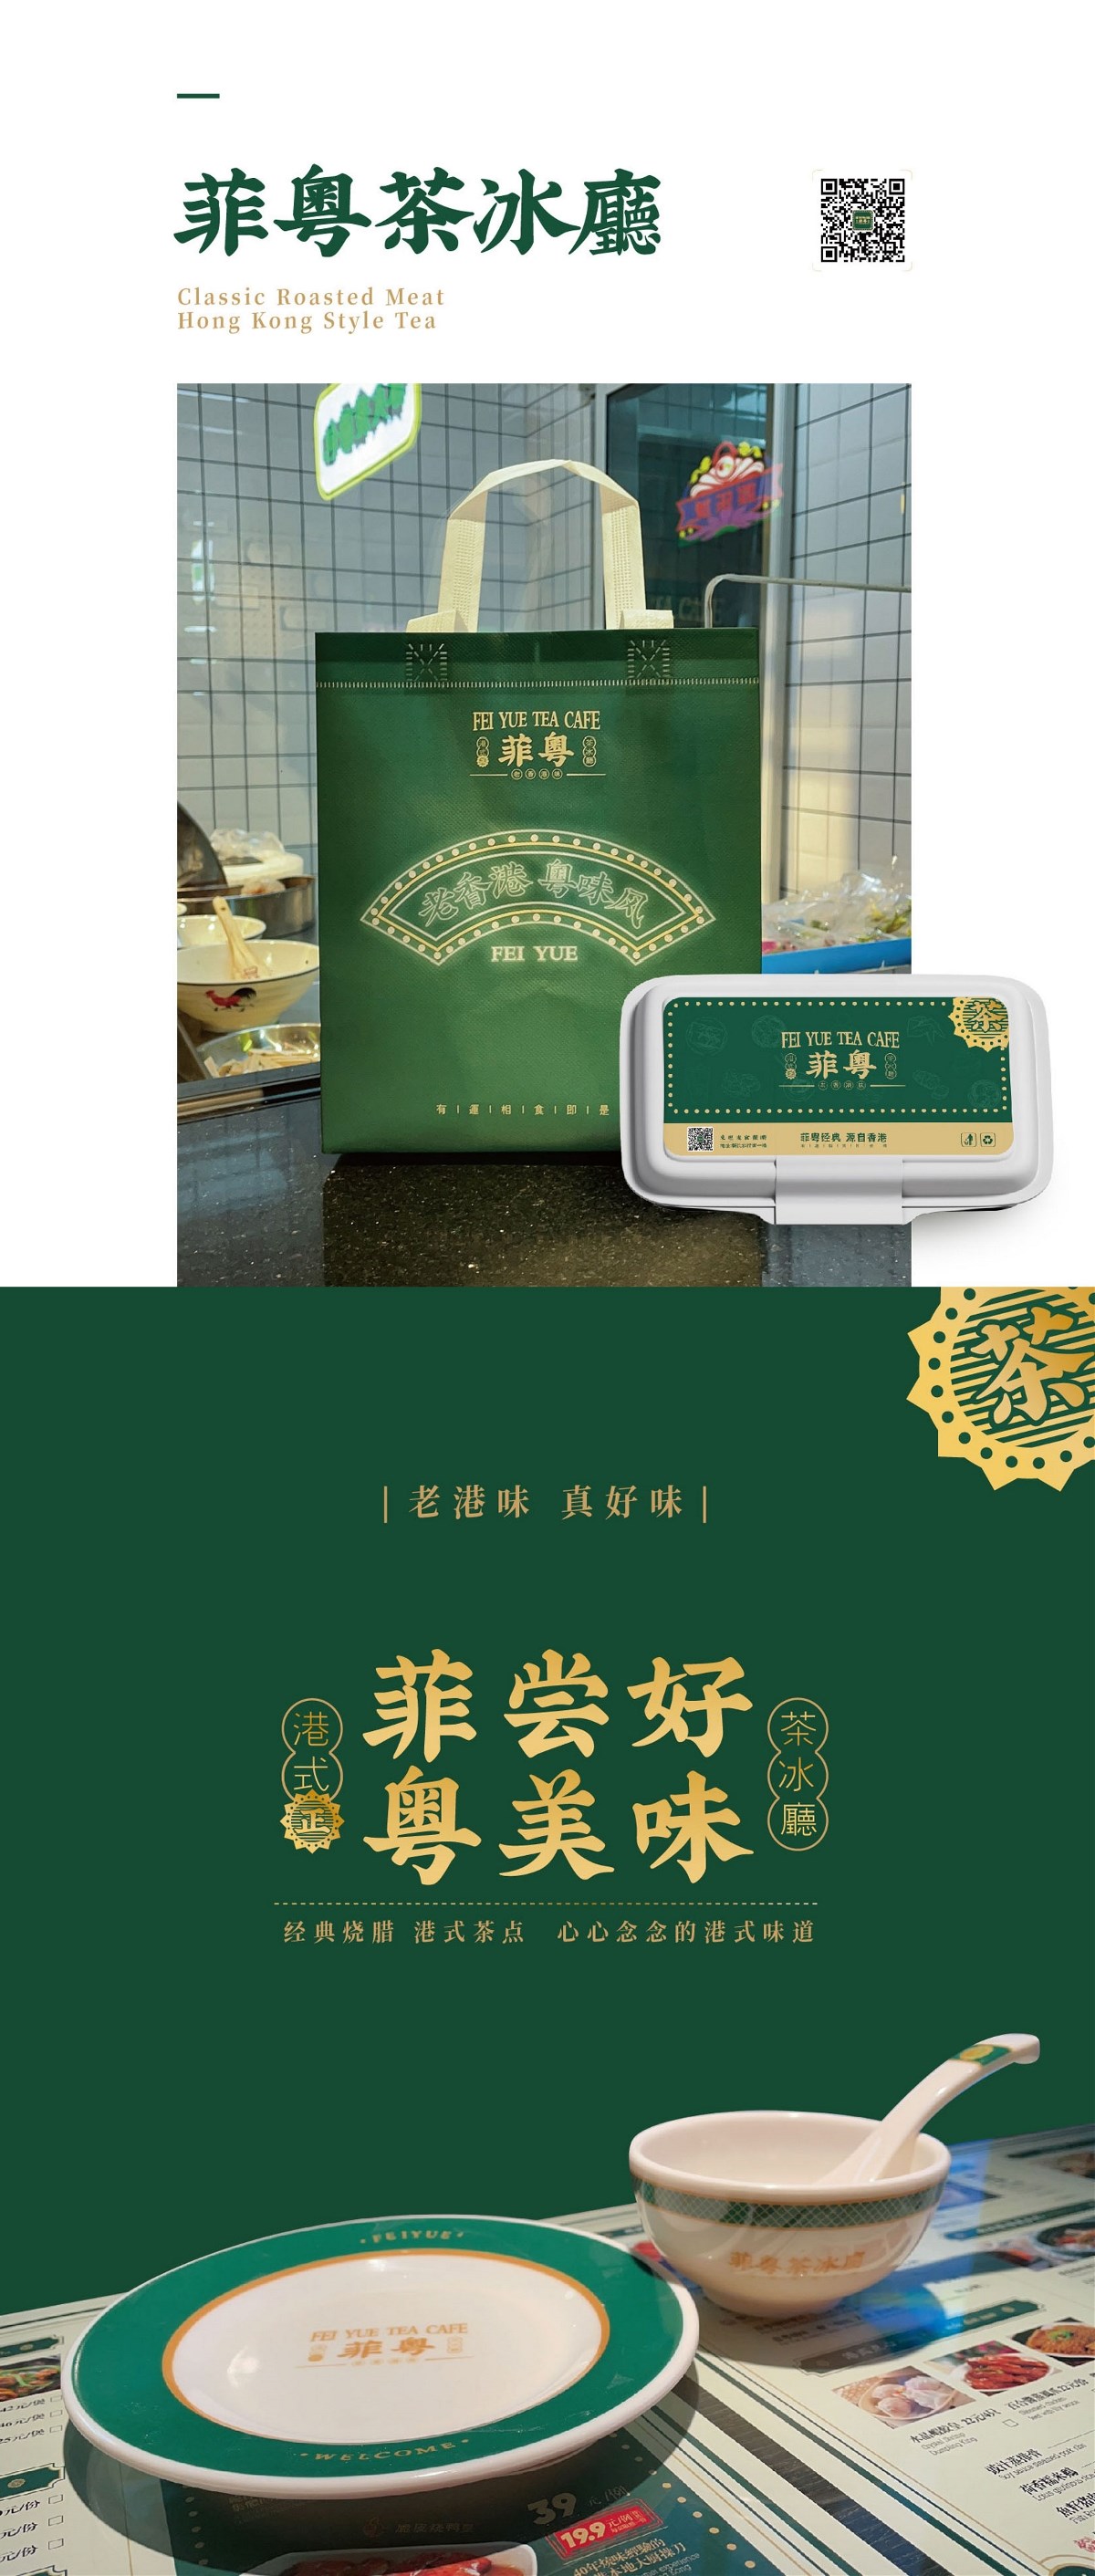 港式餐饮·菲粵茶冰厅